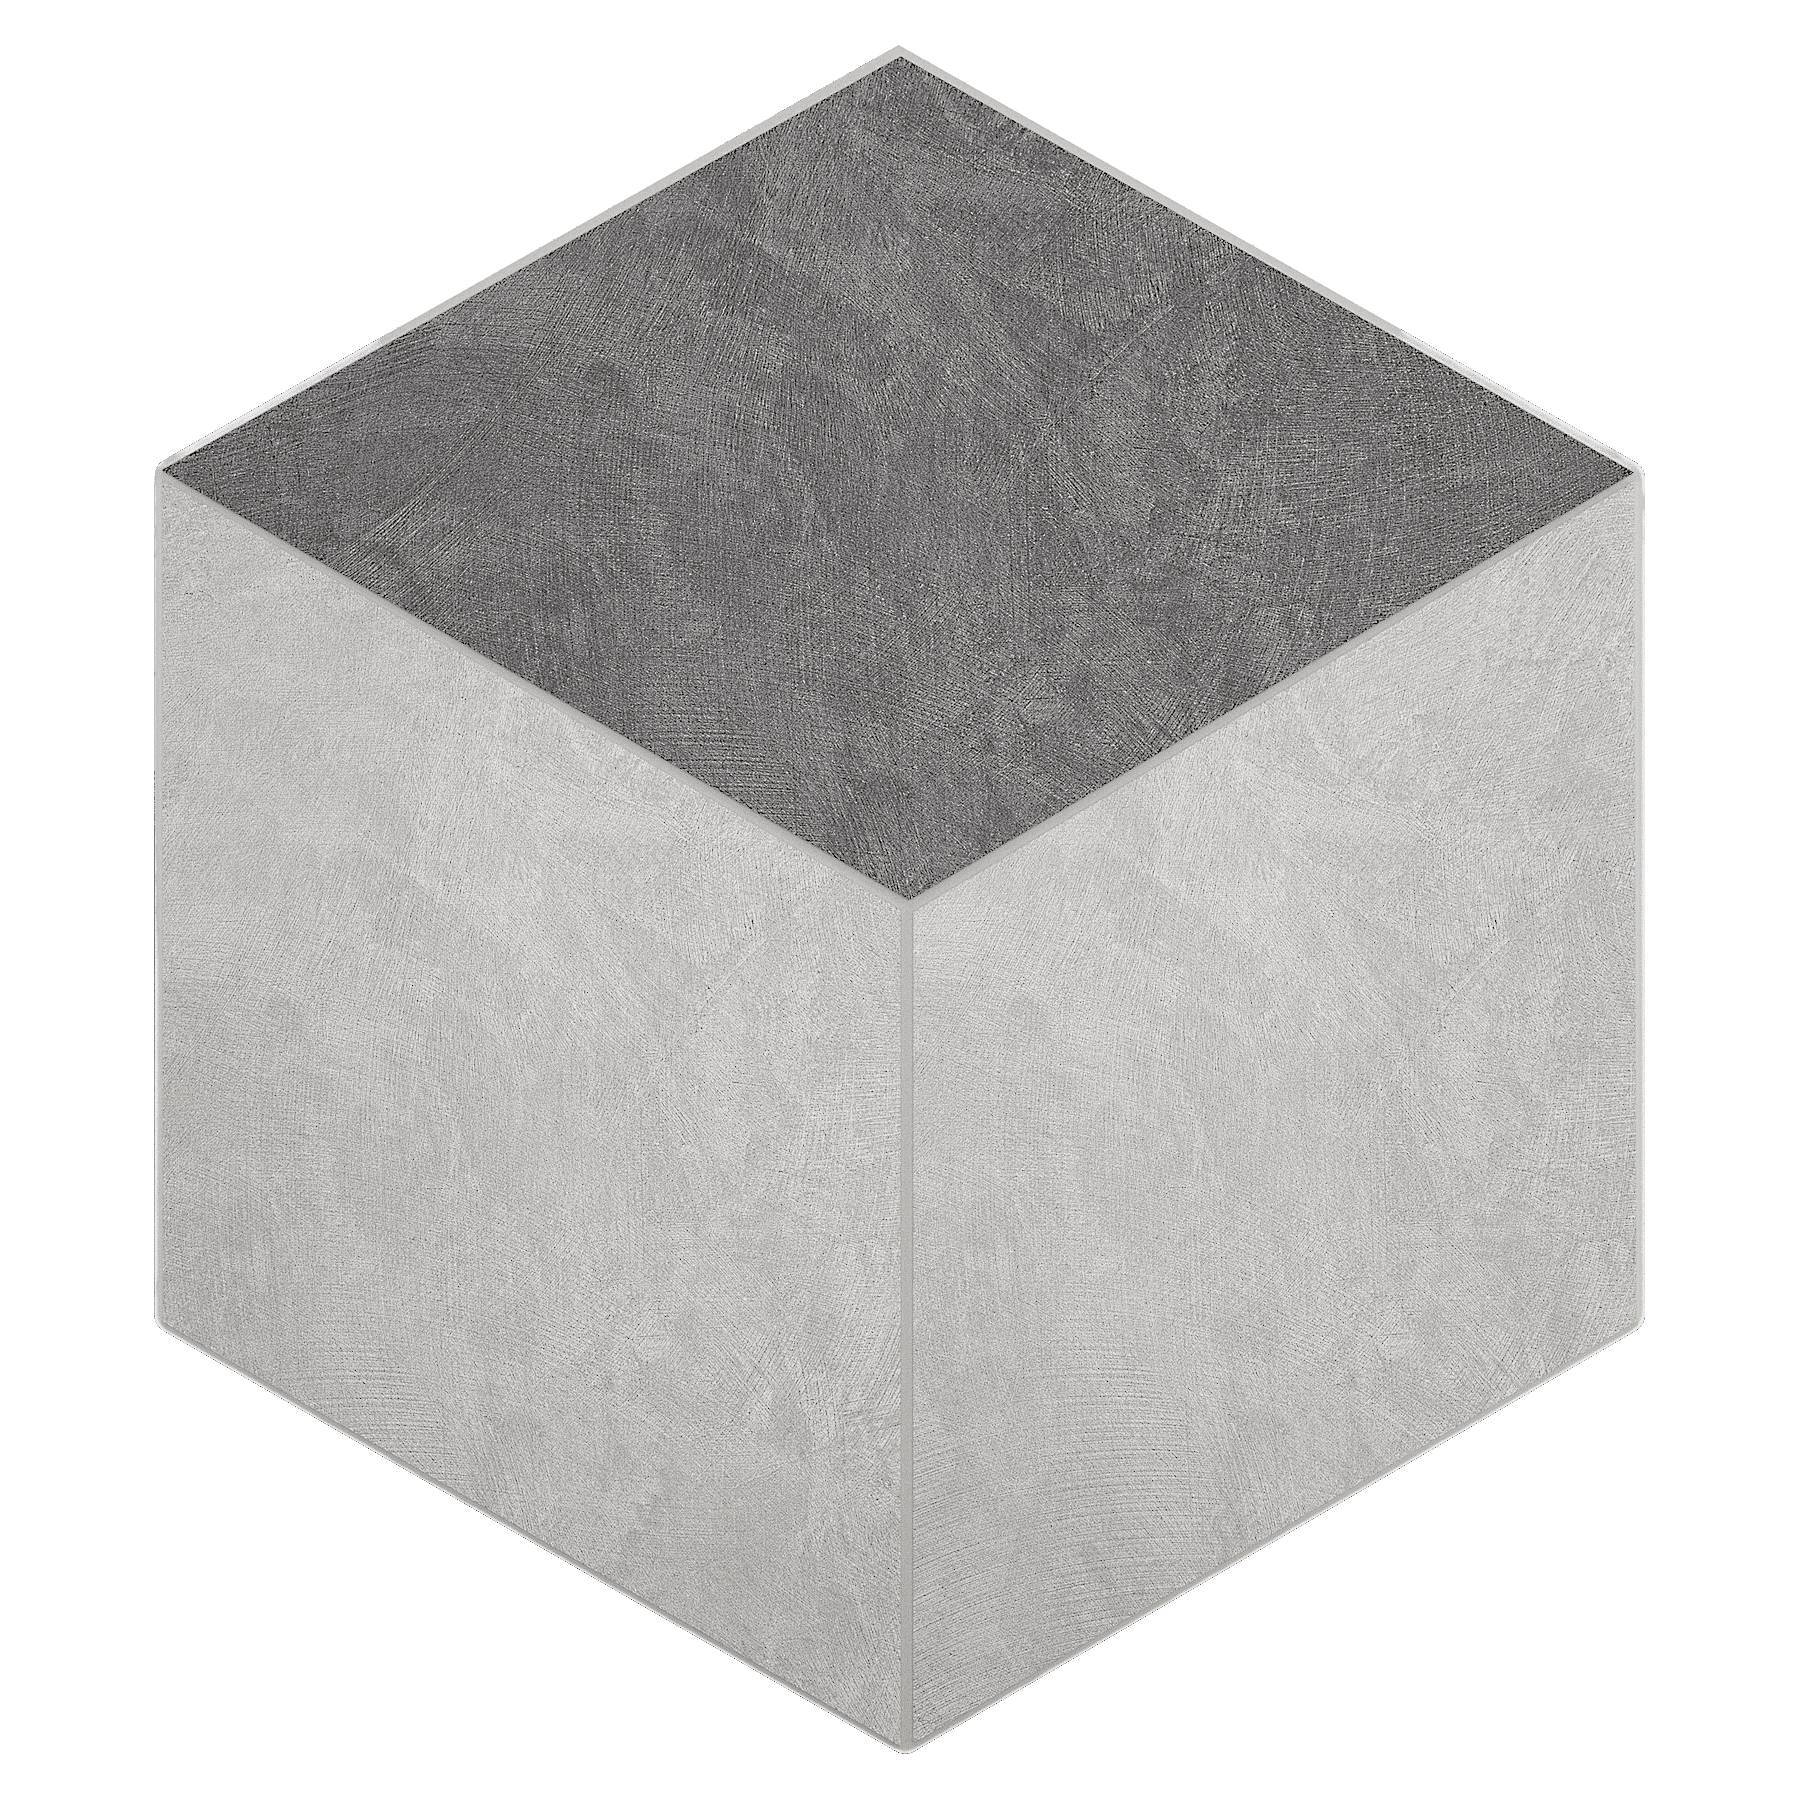 Мозаика Ametis Spectrum Milky White/Grey SR00/SR01 Cube Непол. 29x25 мозаика ametis spectrum salmon sr05 cube непол 29x25